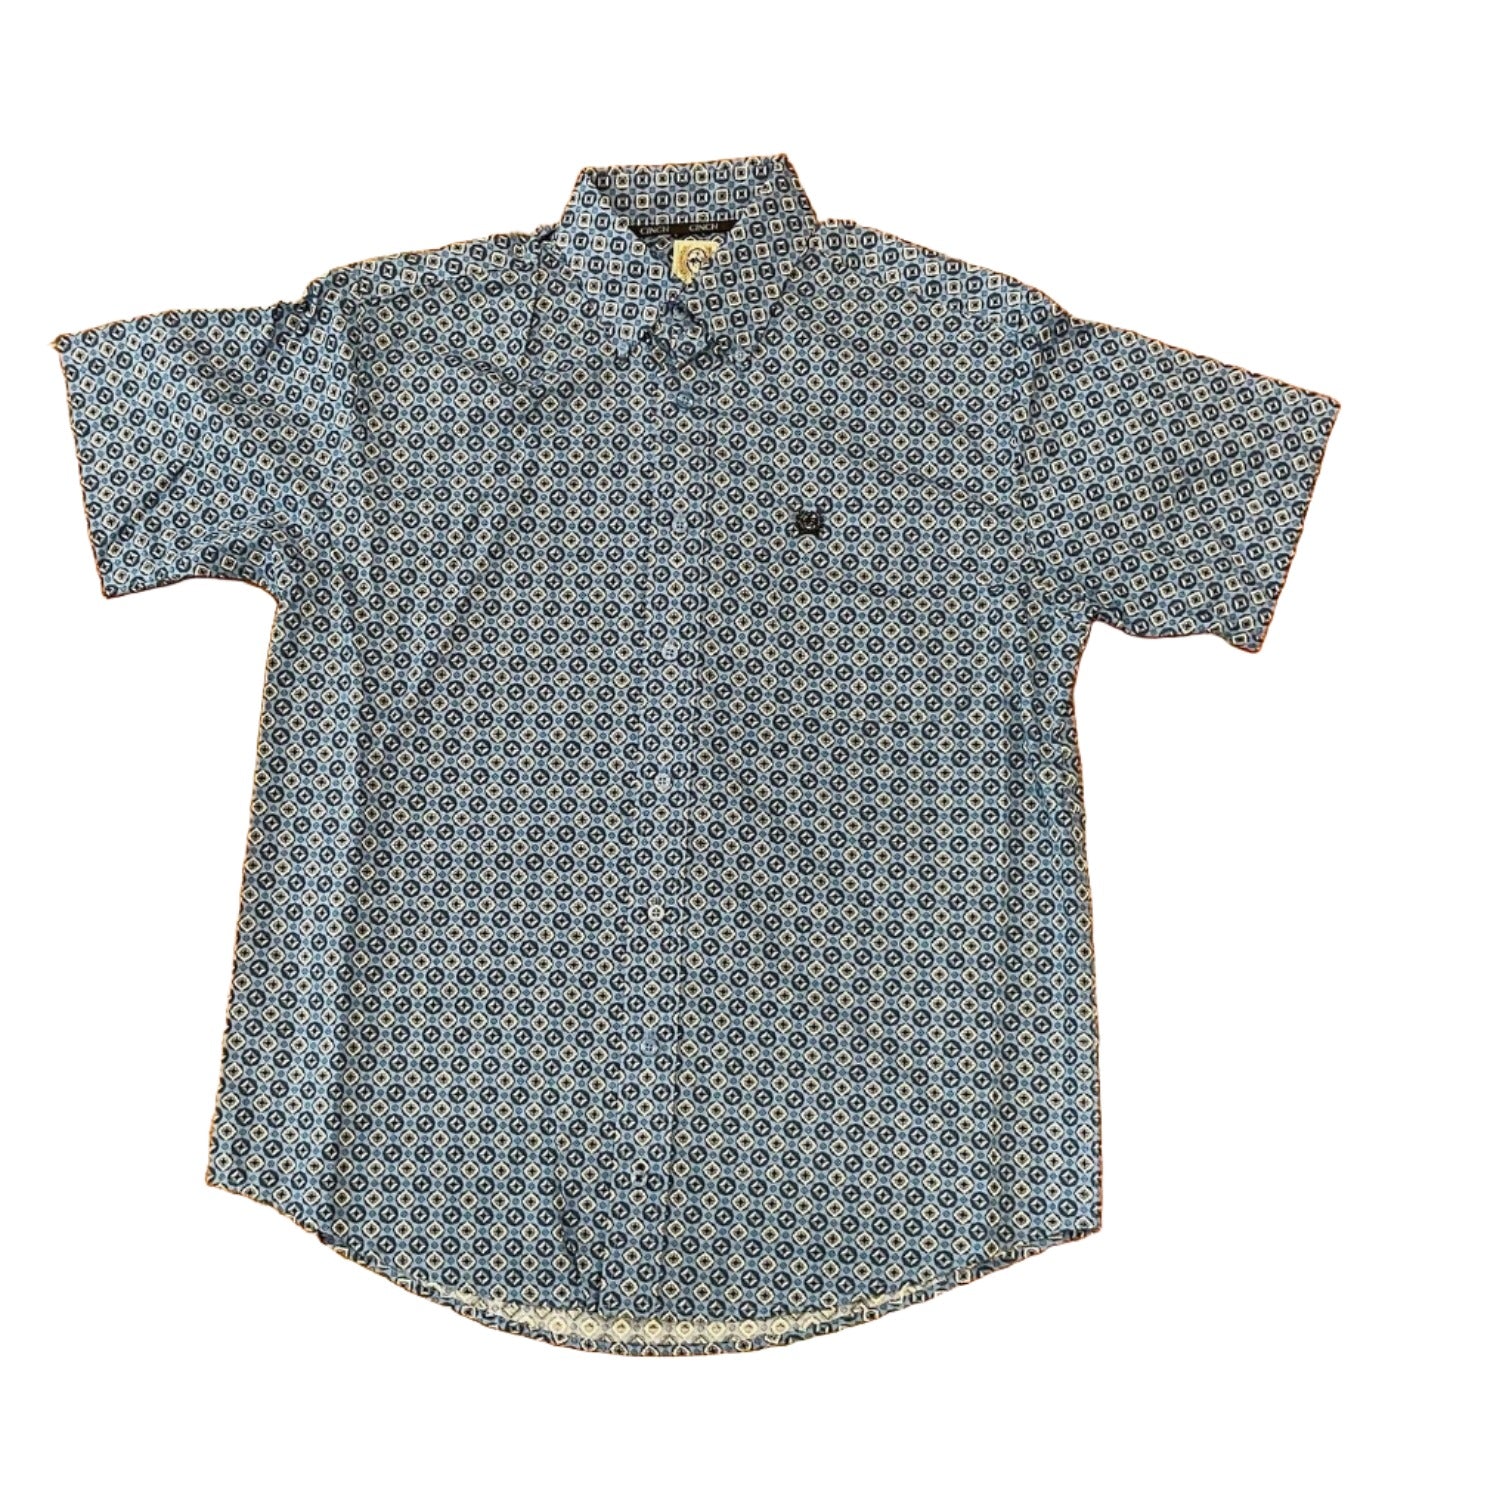 Cinch Men’s Shirt Short Sleeve Button Down MTW1111420 - Cinch